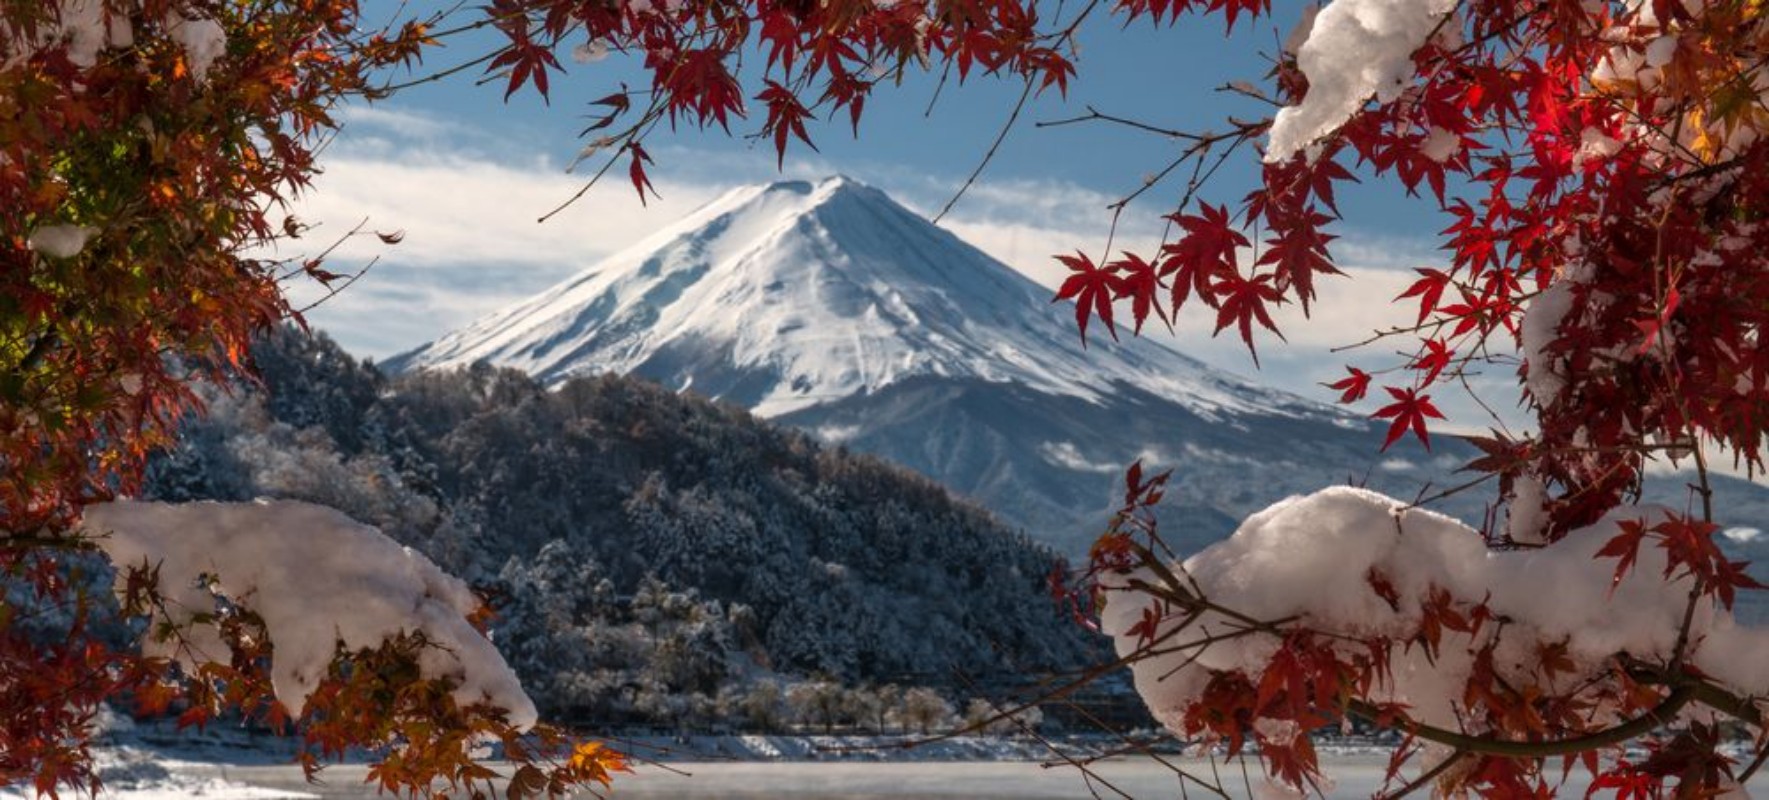 Afbeeldingen van Mount Fuji Japan